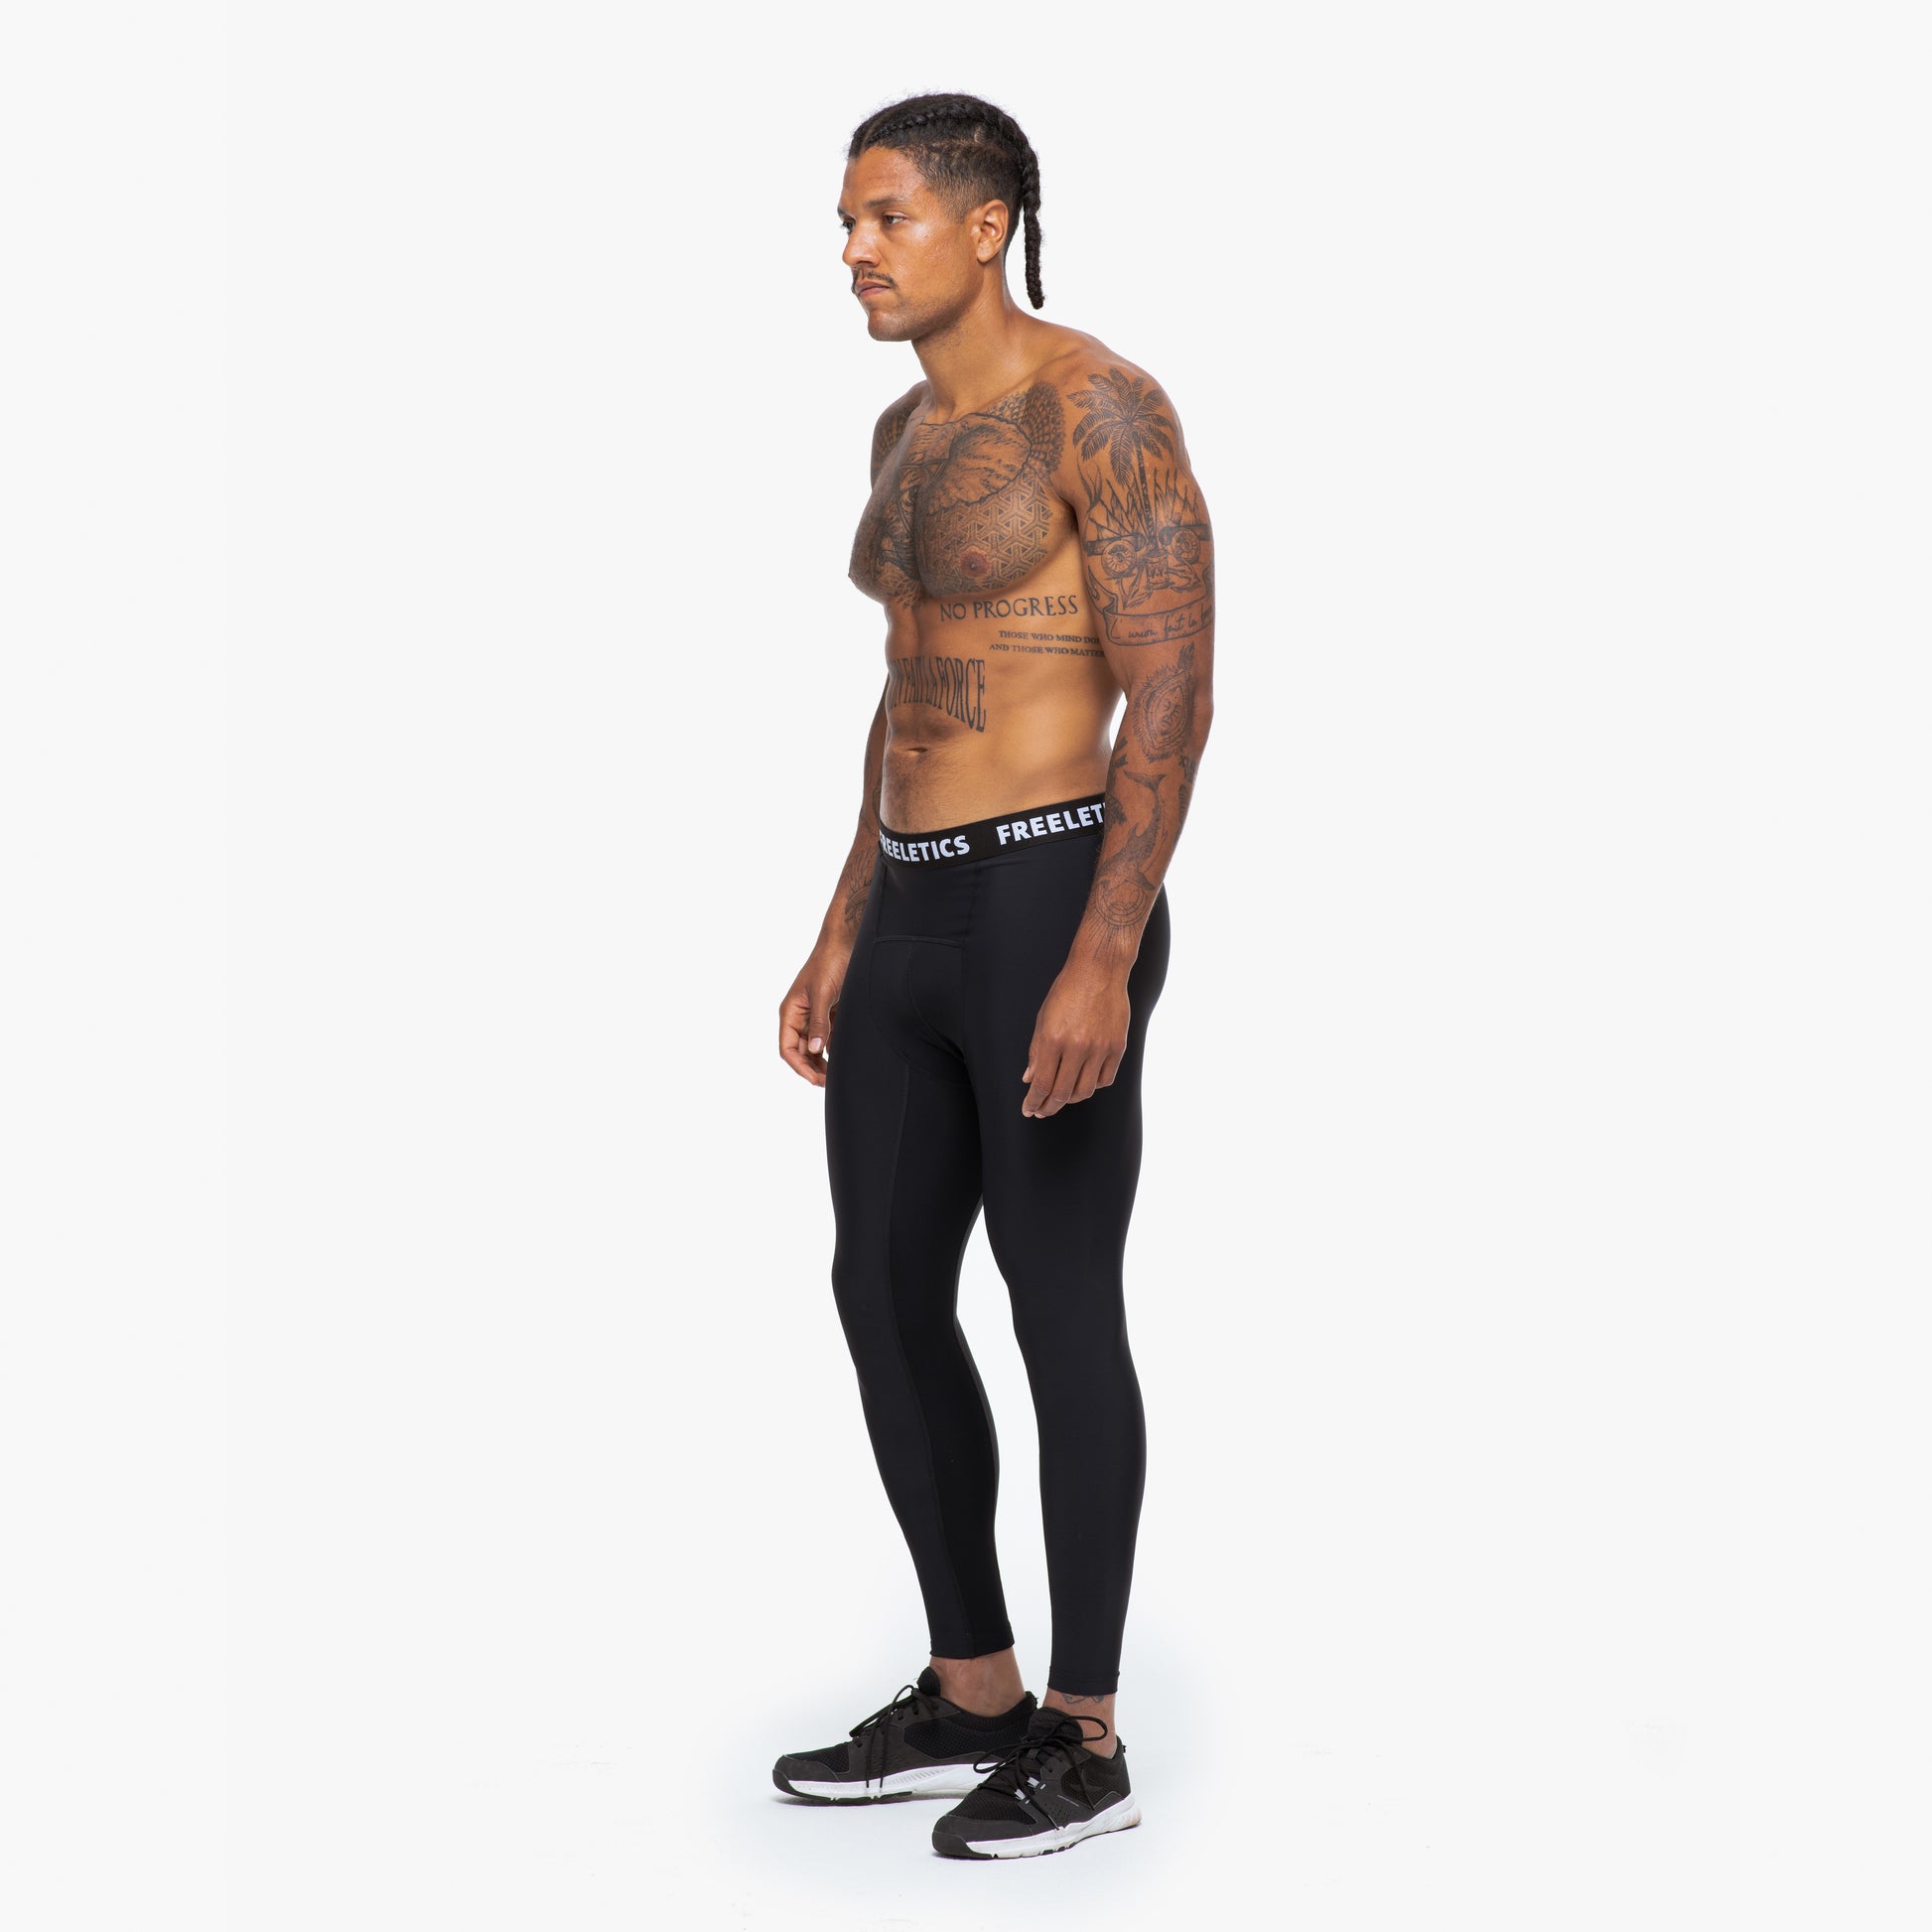 Men's Outlet Workout Pants & Leggings, Under Armour